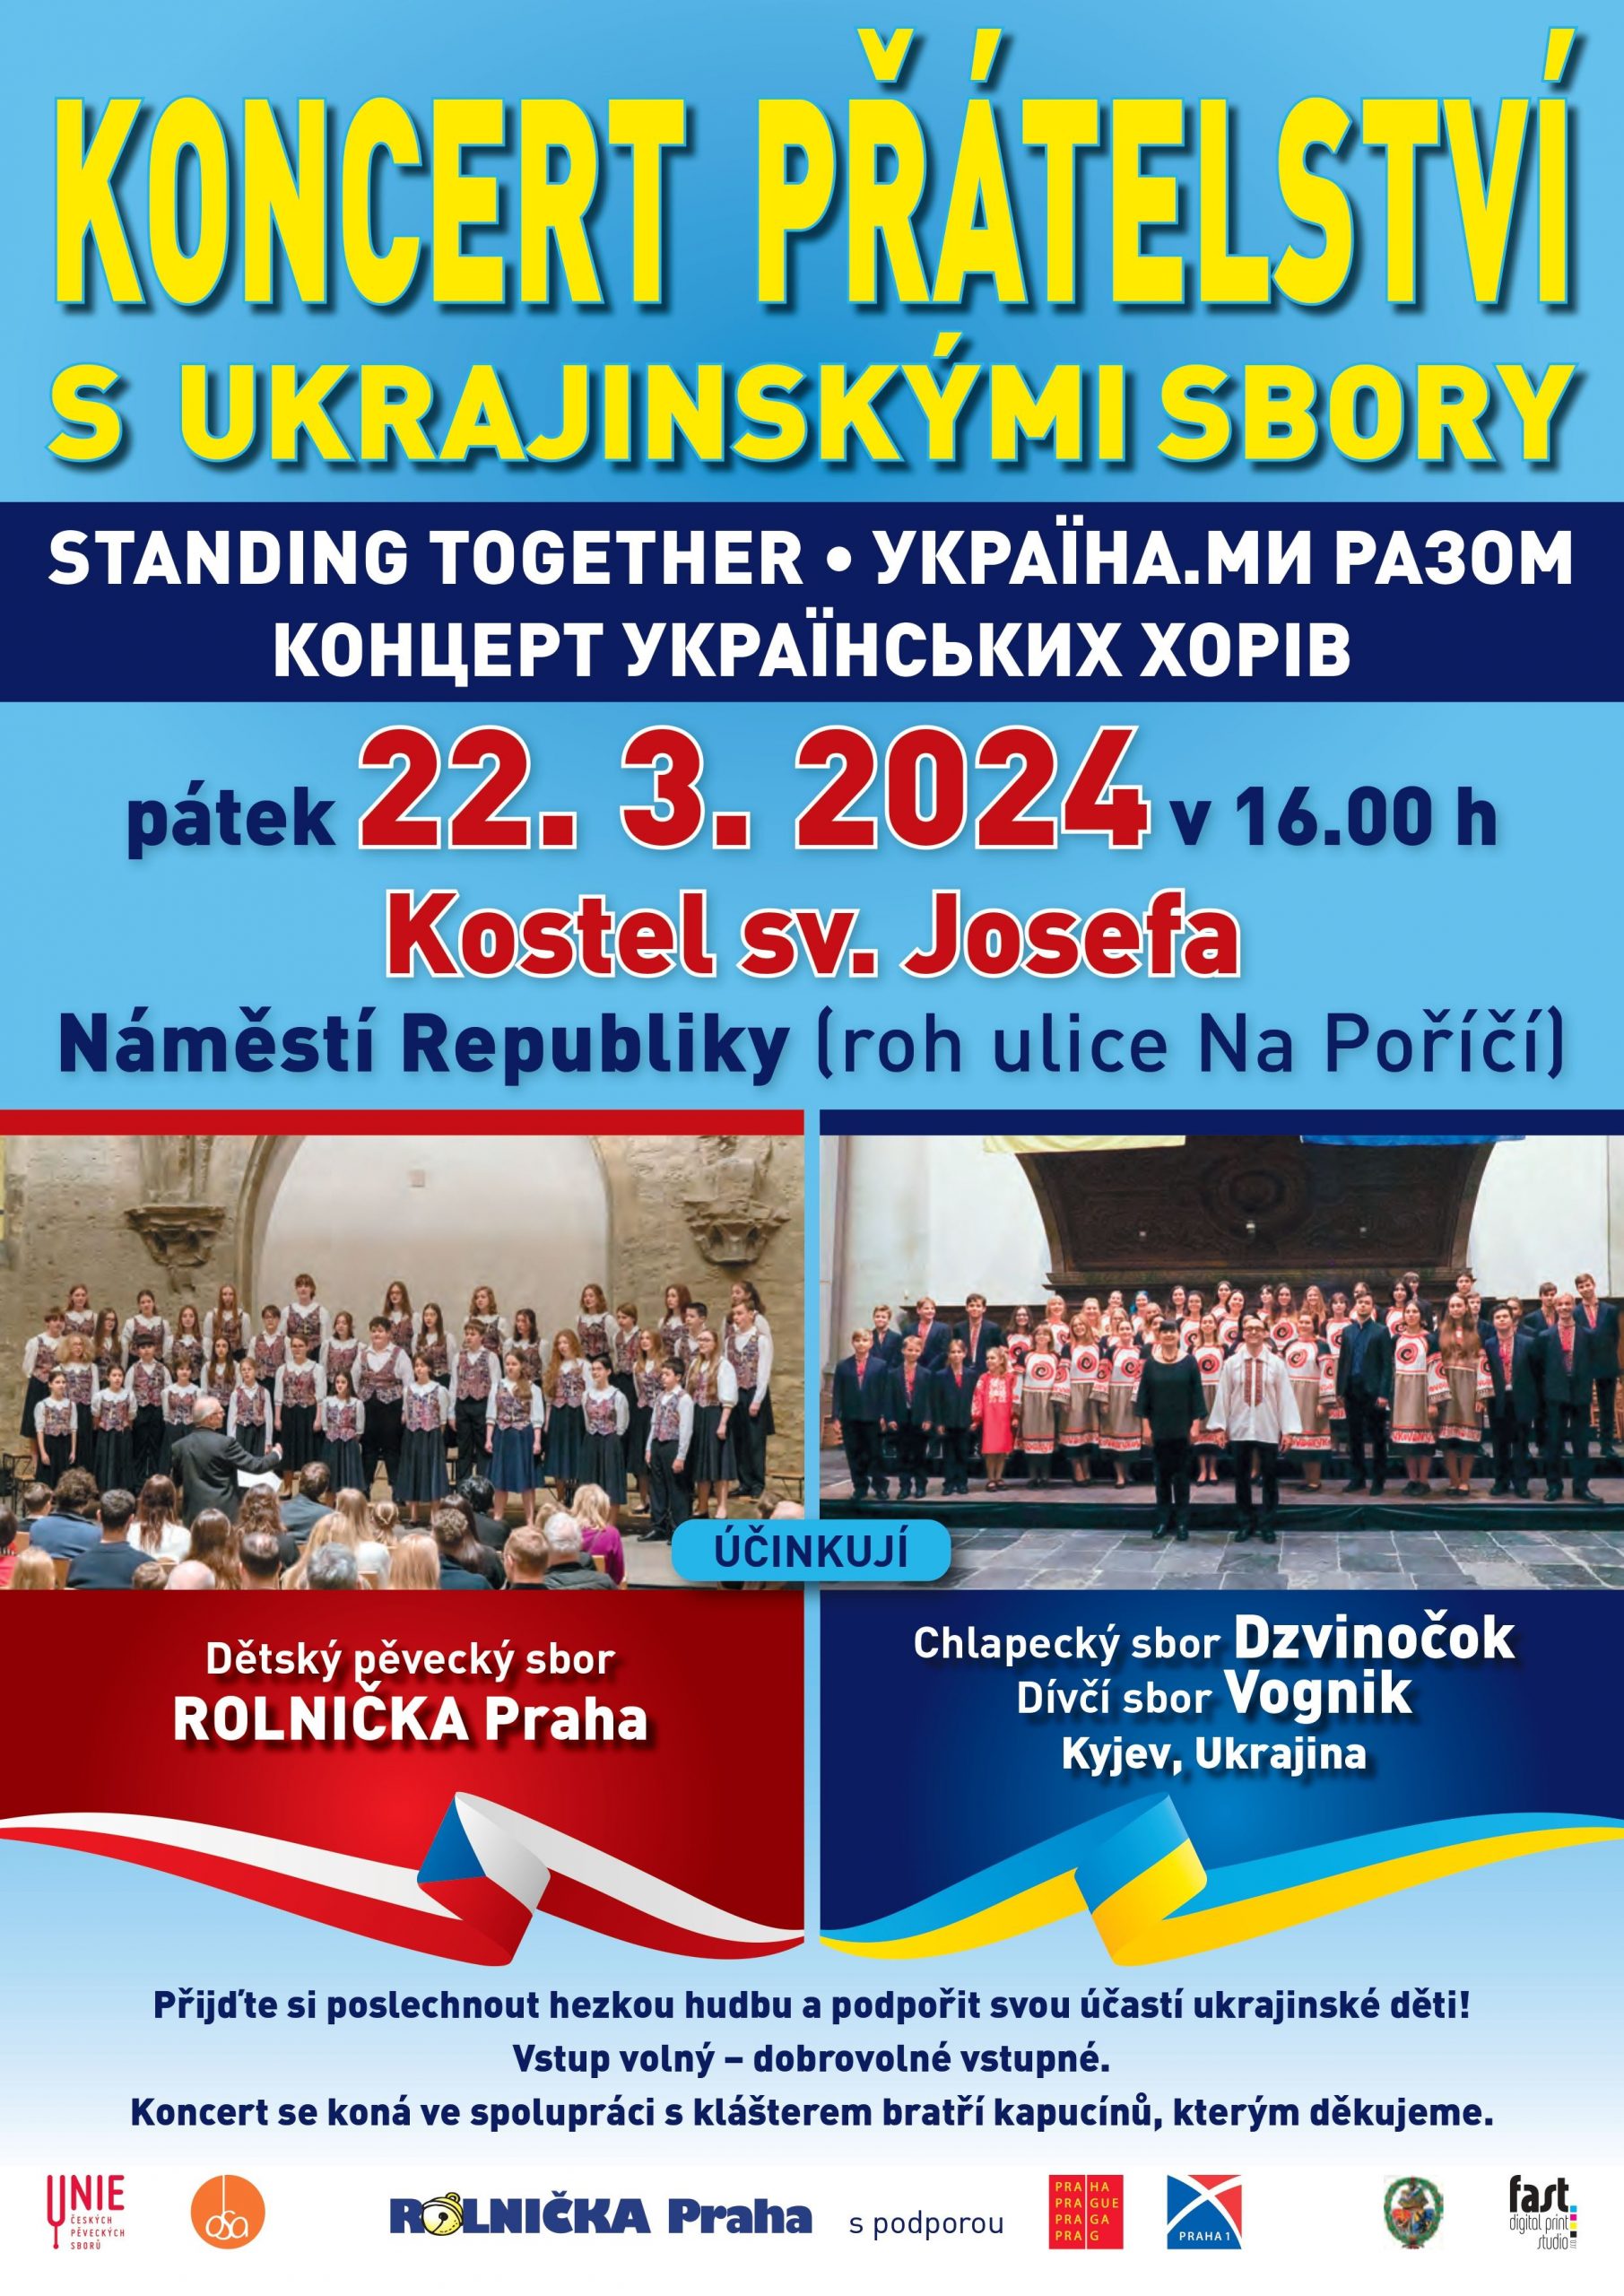 Koncert přátelství s ukrajinskými sbory